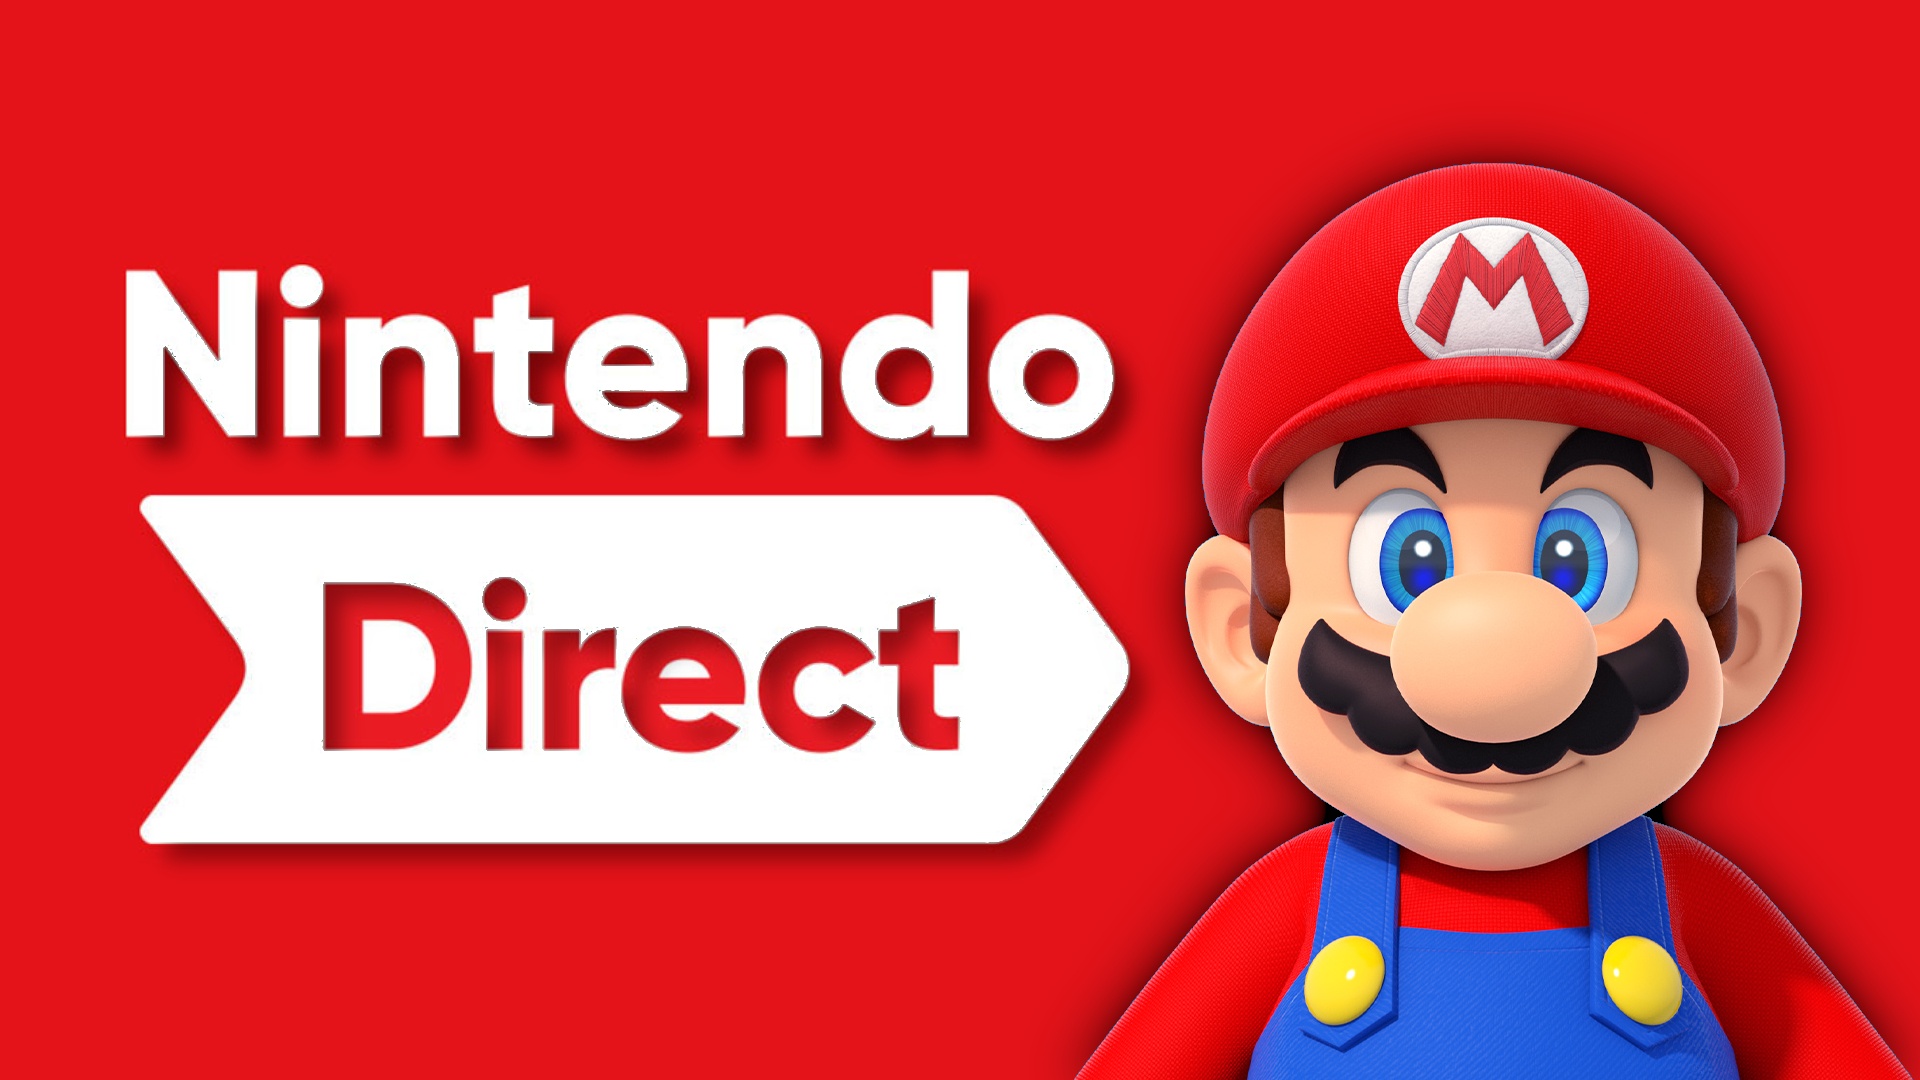 #Die nächste Nintendo Direct findet morgen statt, kommt ein neues Mario-Spiel?